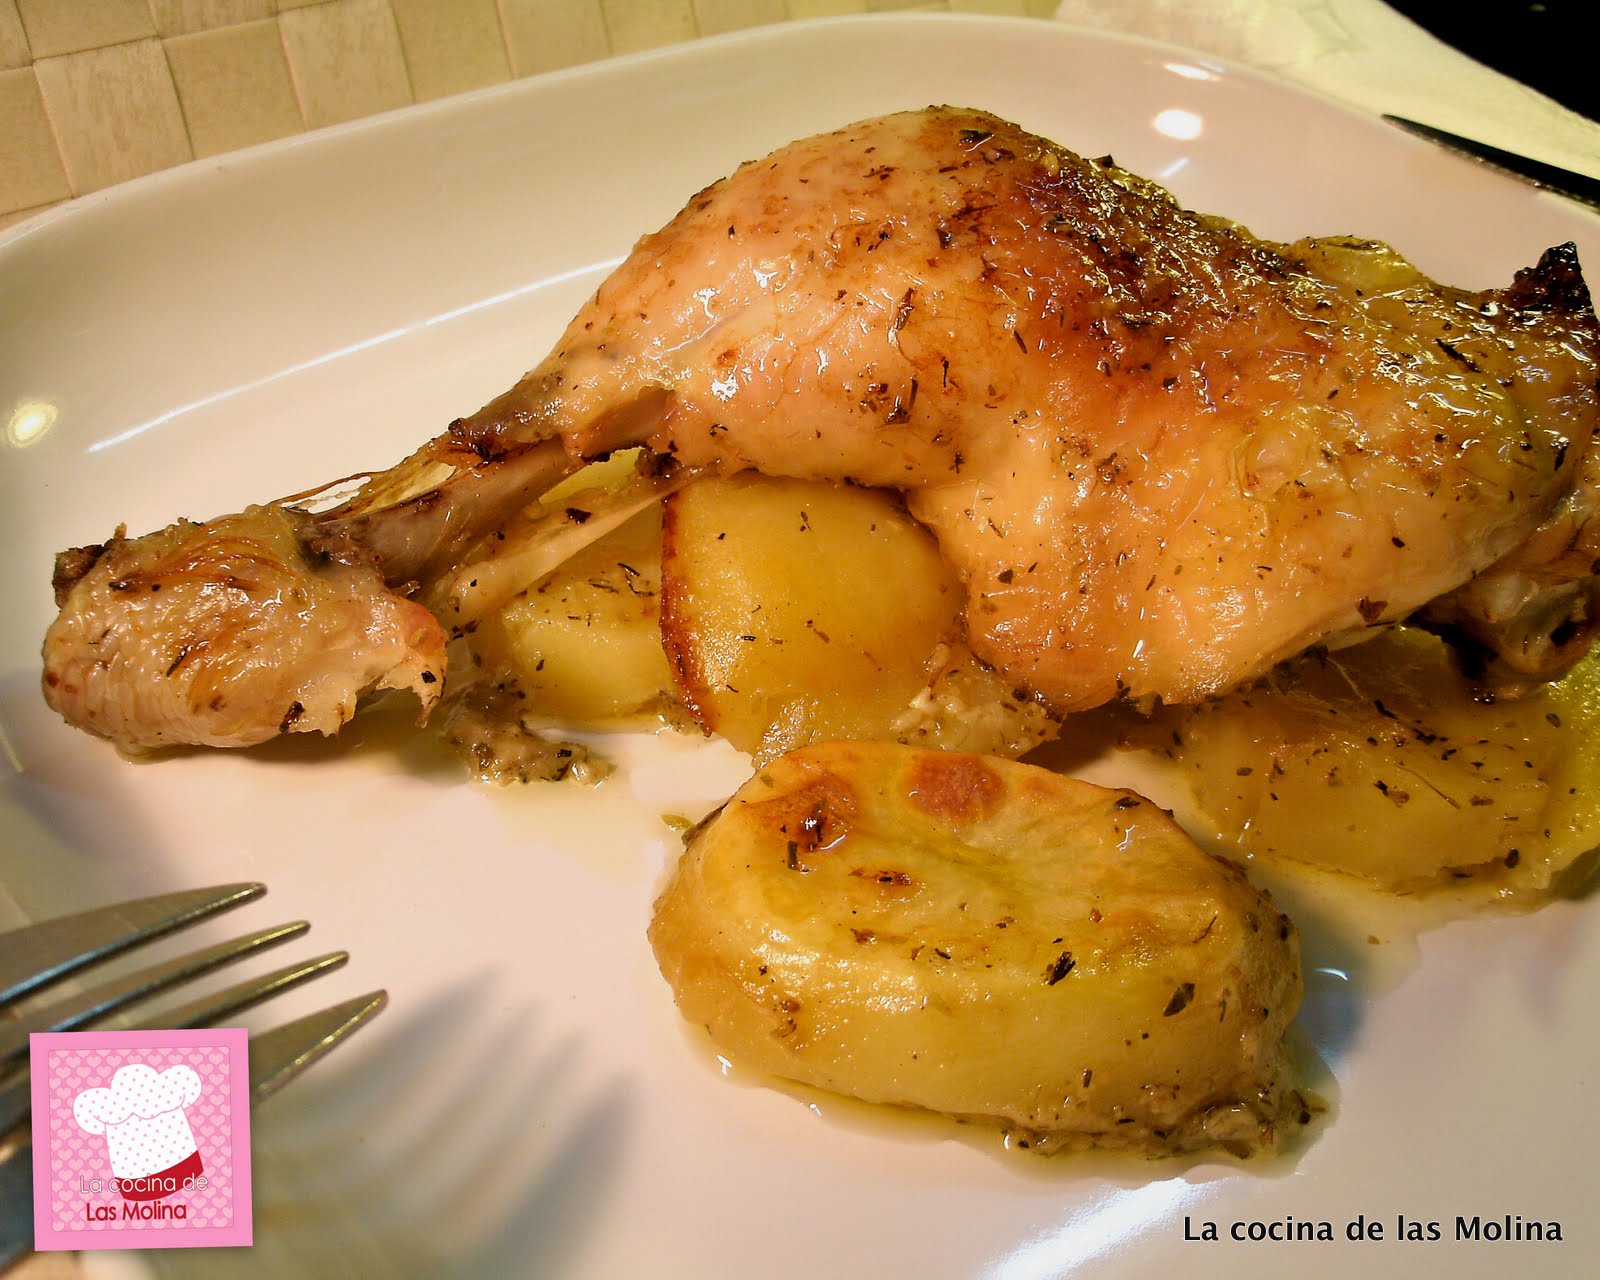 La cocina de las Molina: Muslos de pollo al horno sobre cama de patatas